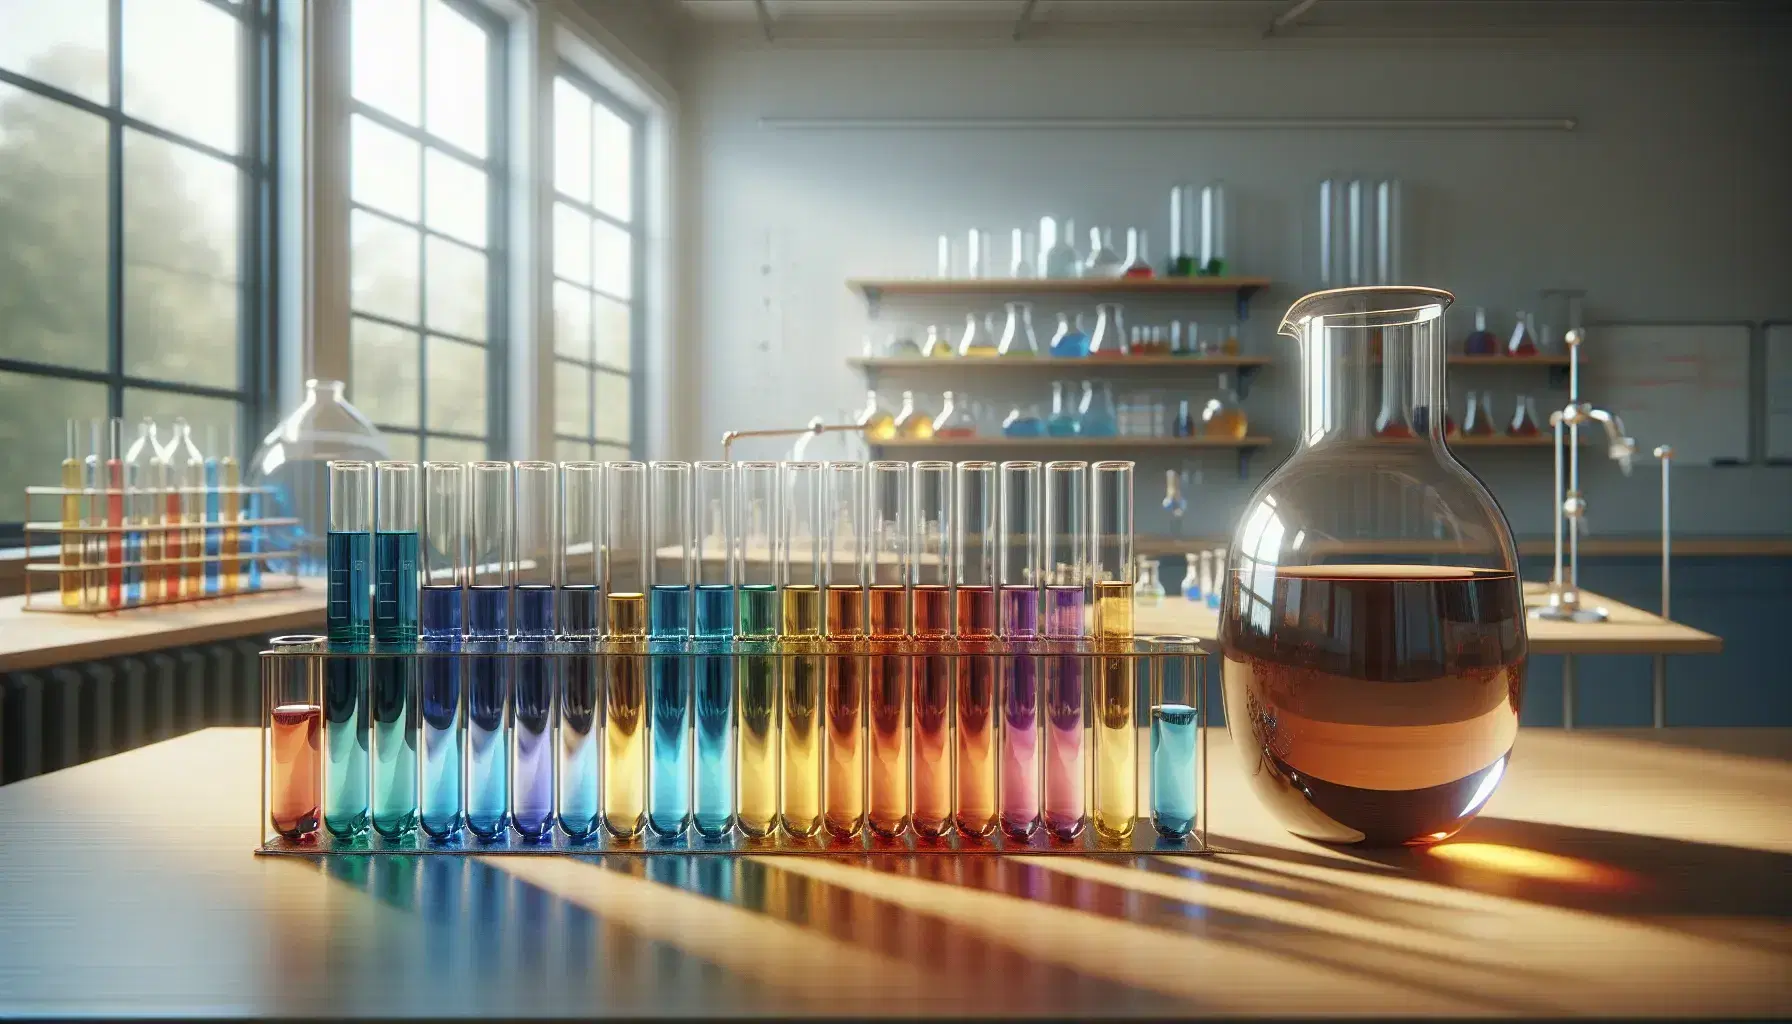 Provette di vetro con liquidi colorati in sfumature dell'arcobaleno su scaffale chiaro in laboratorio, accanto a brocca con miscela marrone.